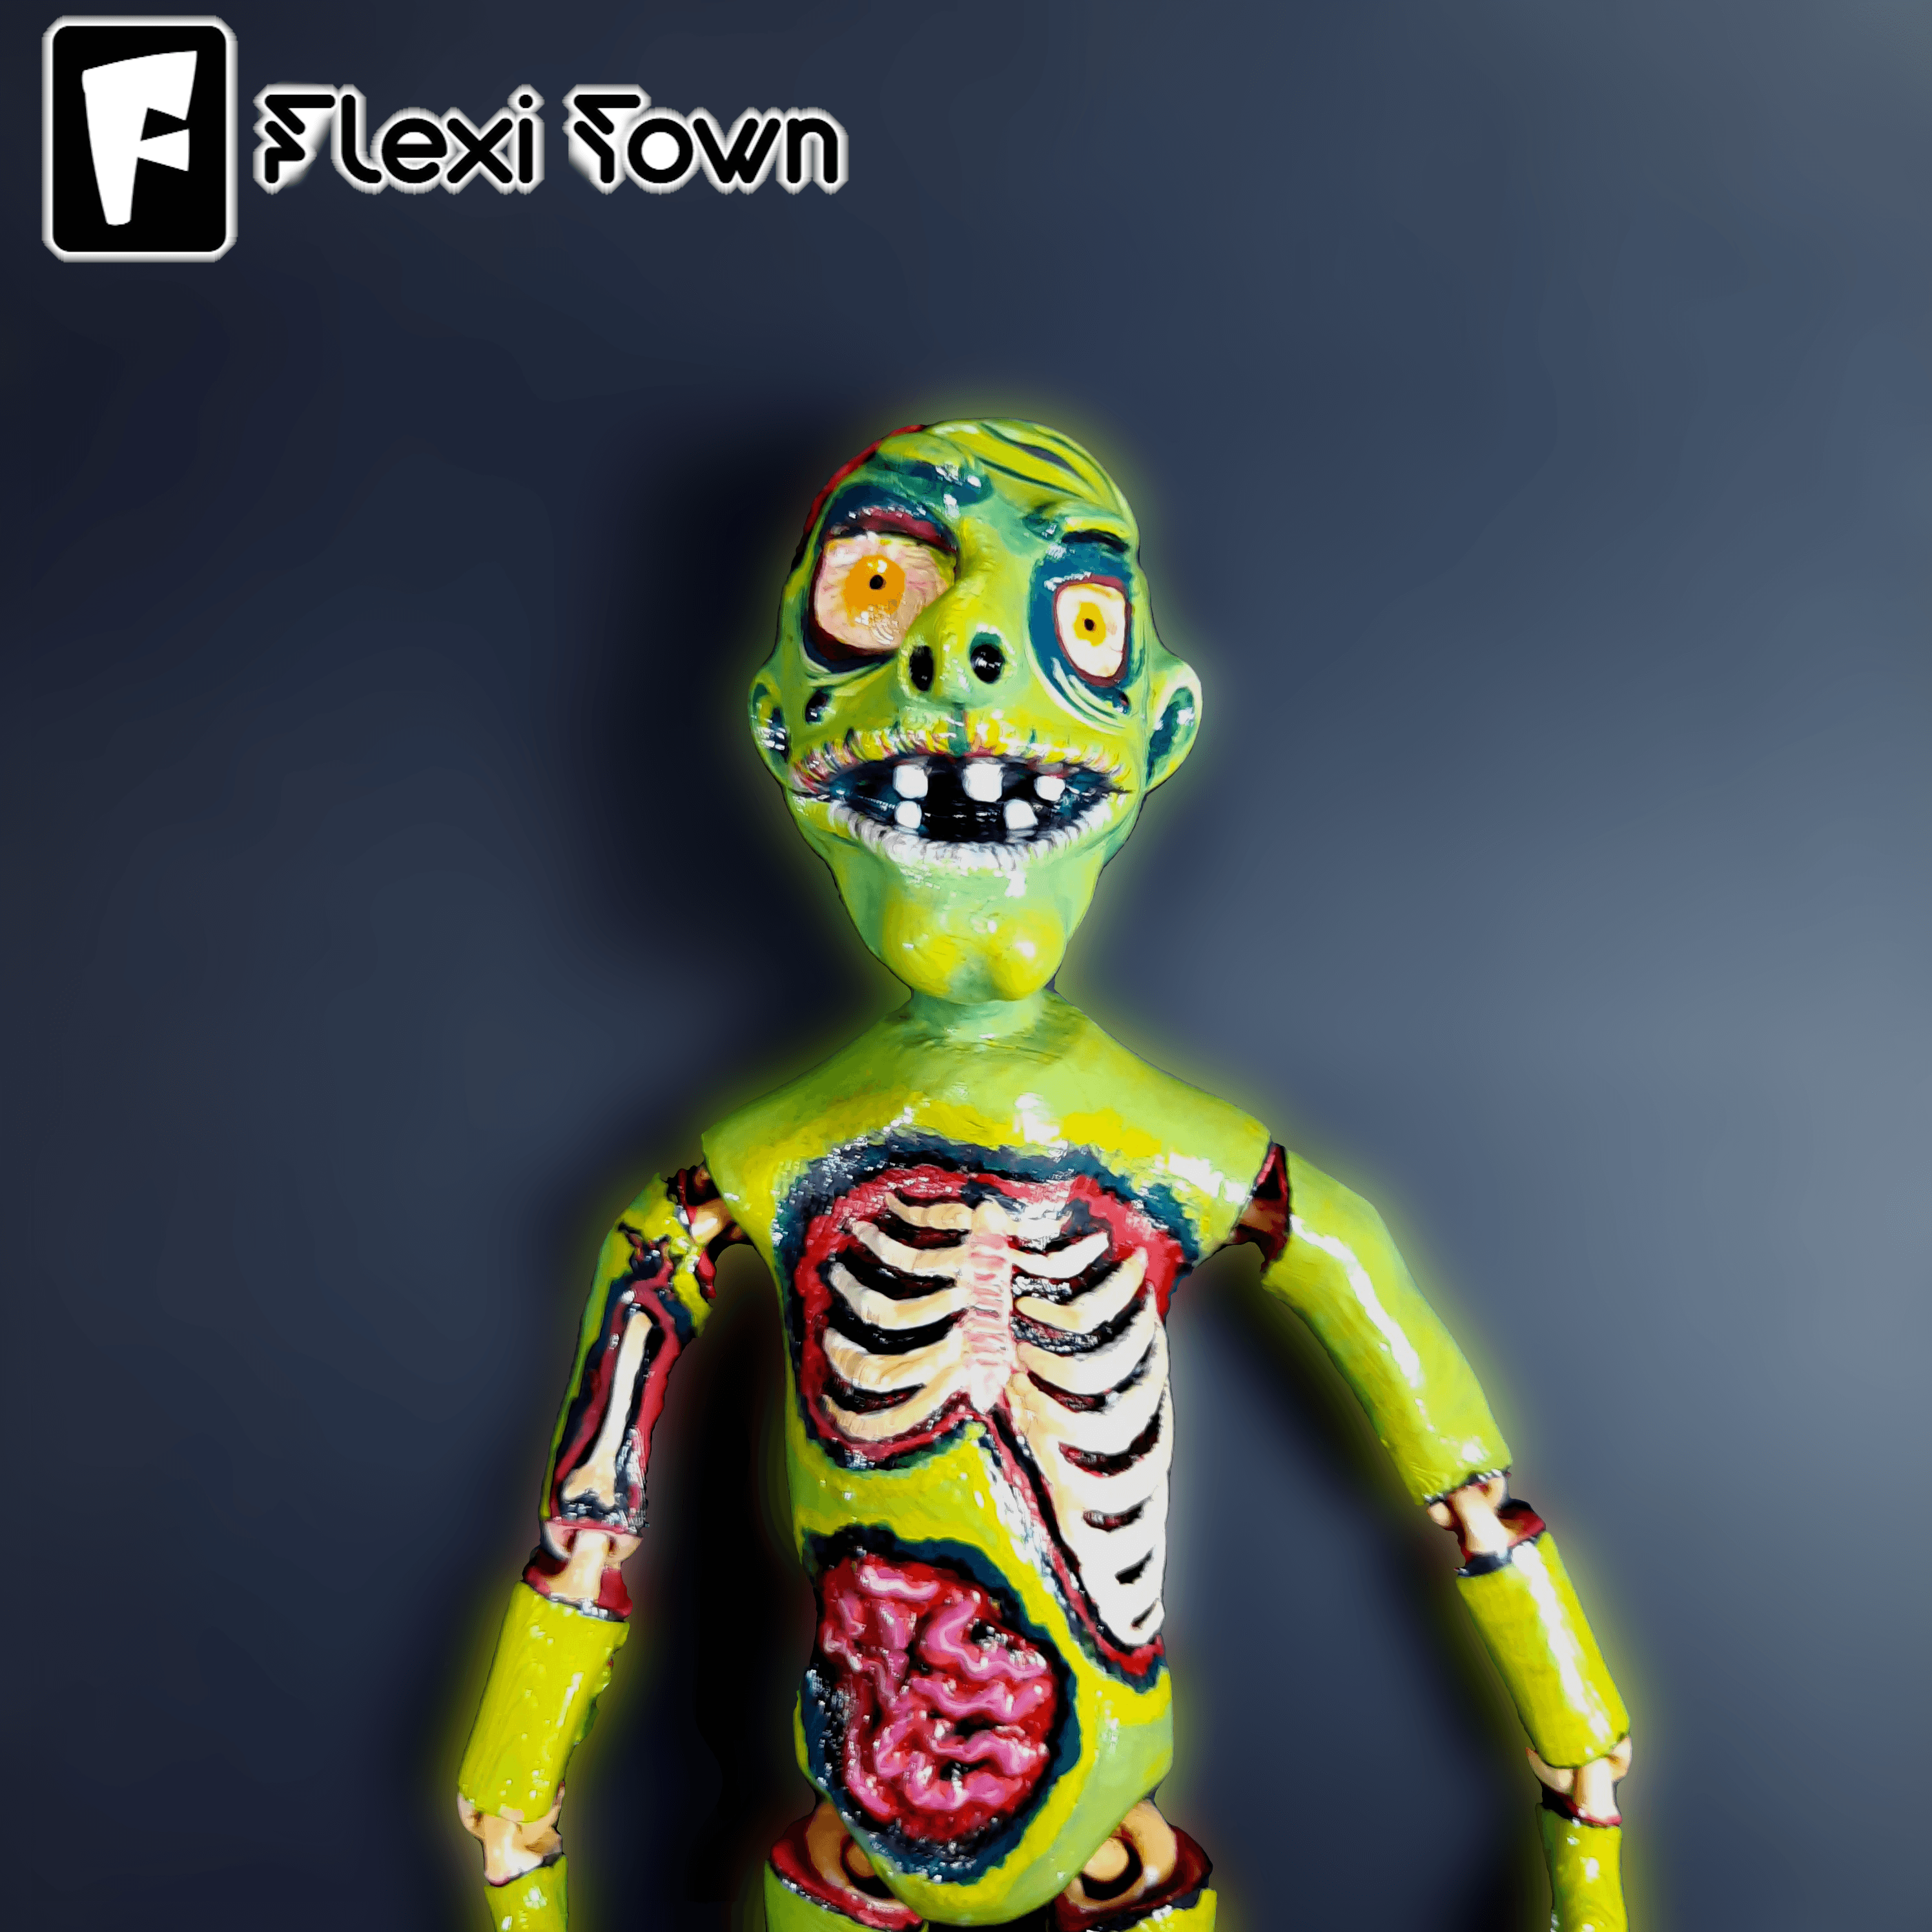 Flexi Print 3d model